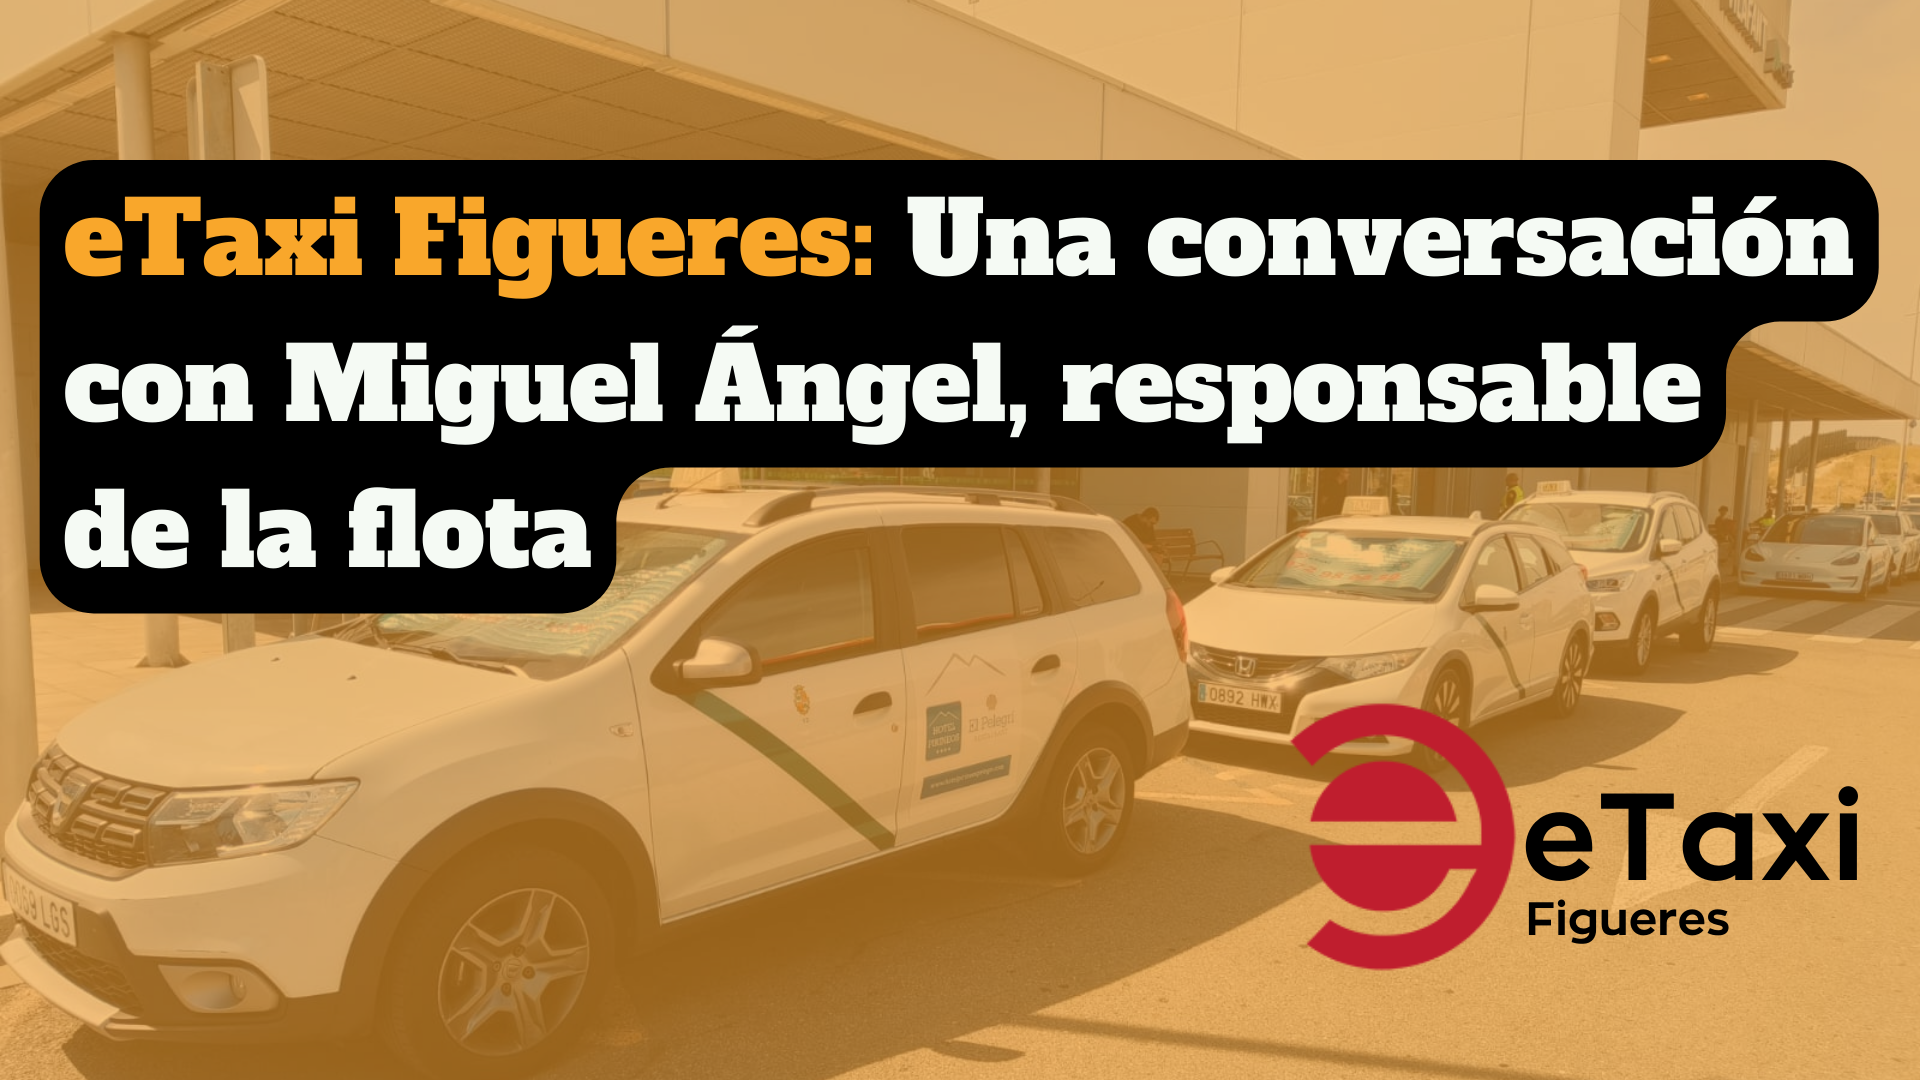 eTaxi Figueres: Una conversación con Miguel Ángel, responsable de la flota